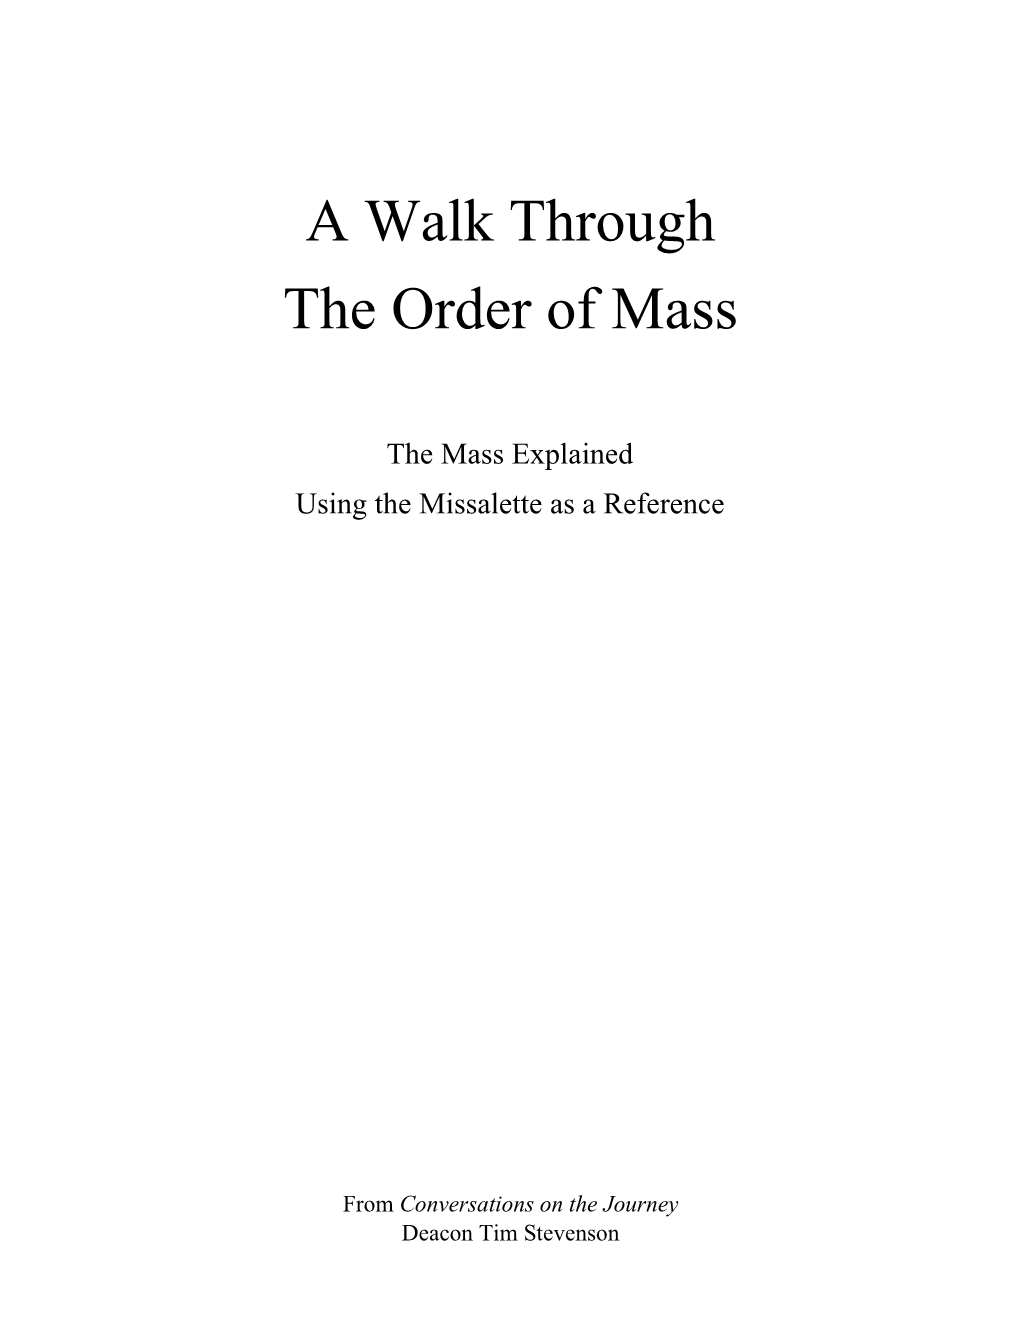 A Walk Through the Order of Mass